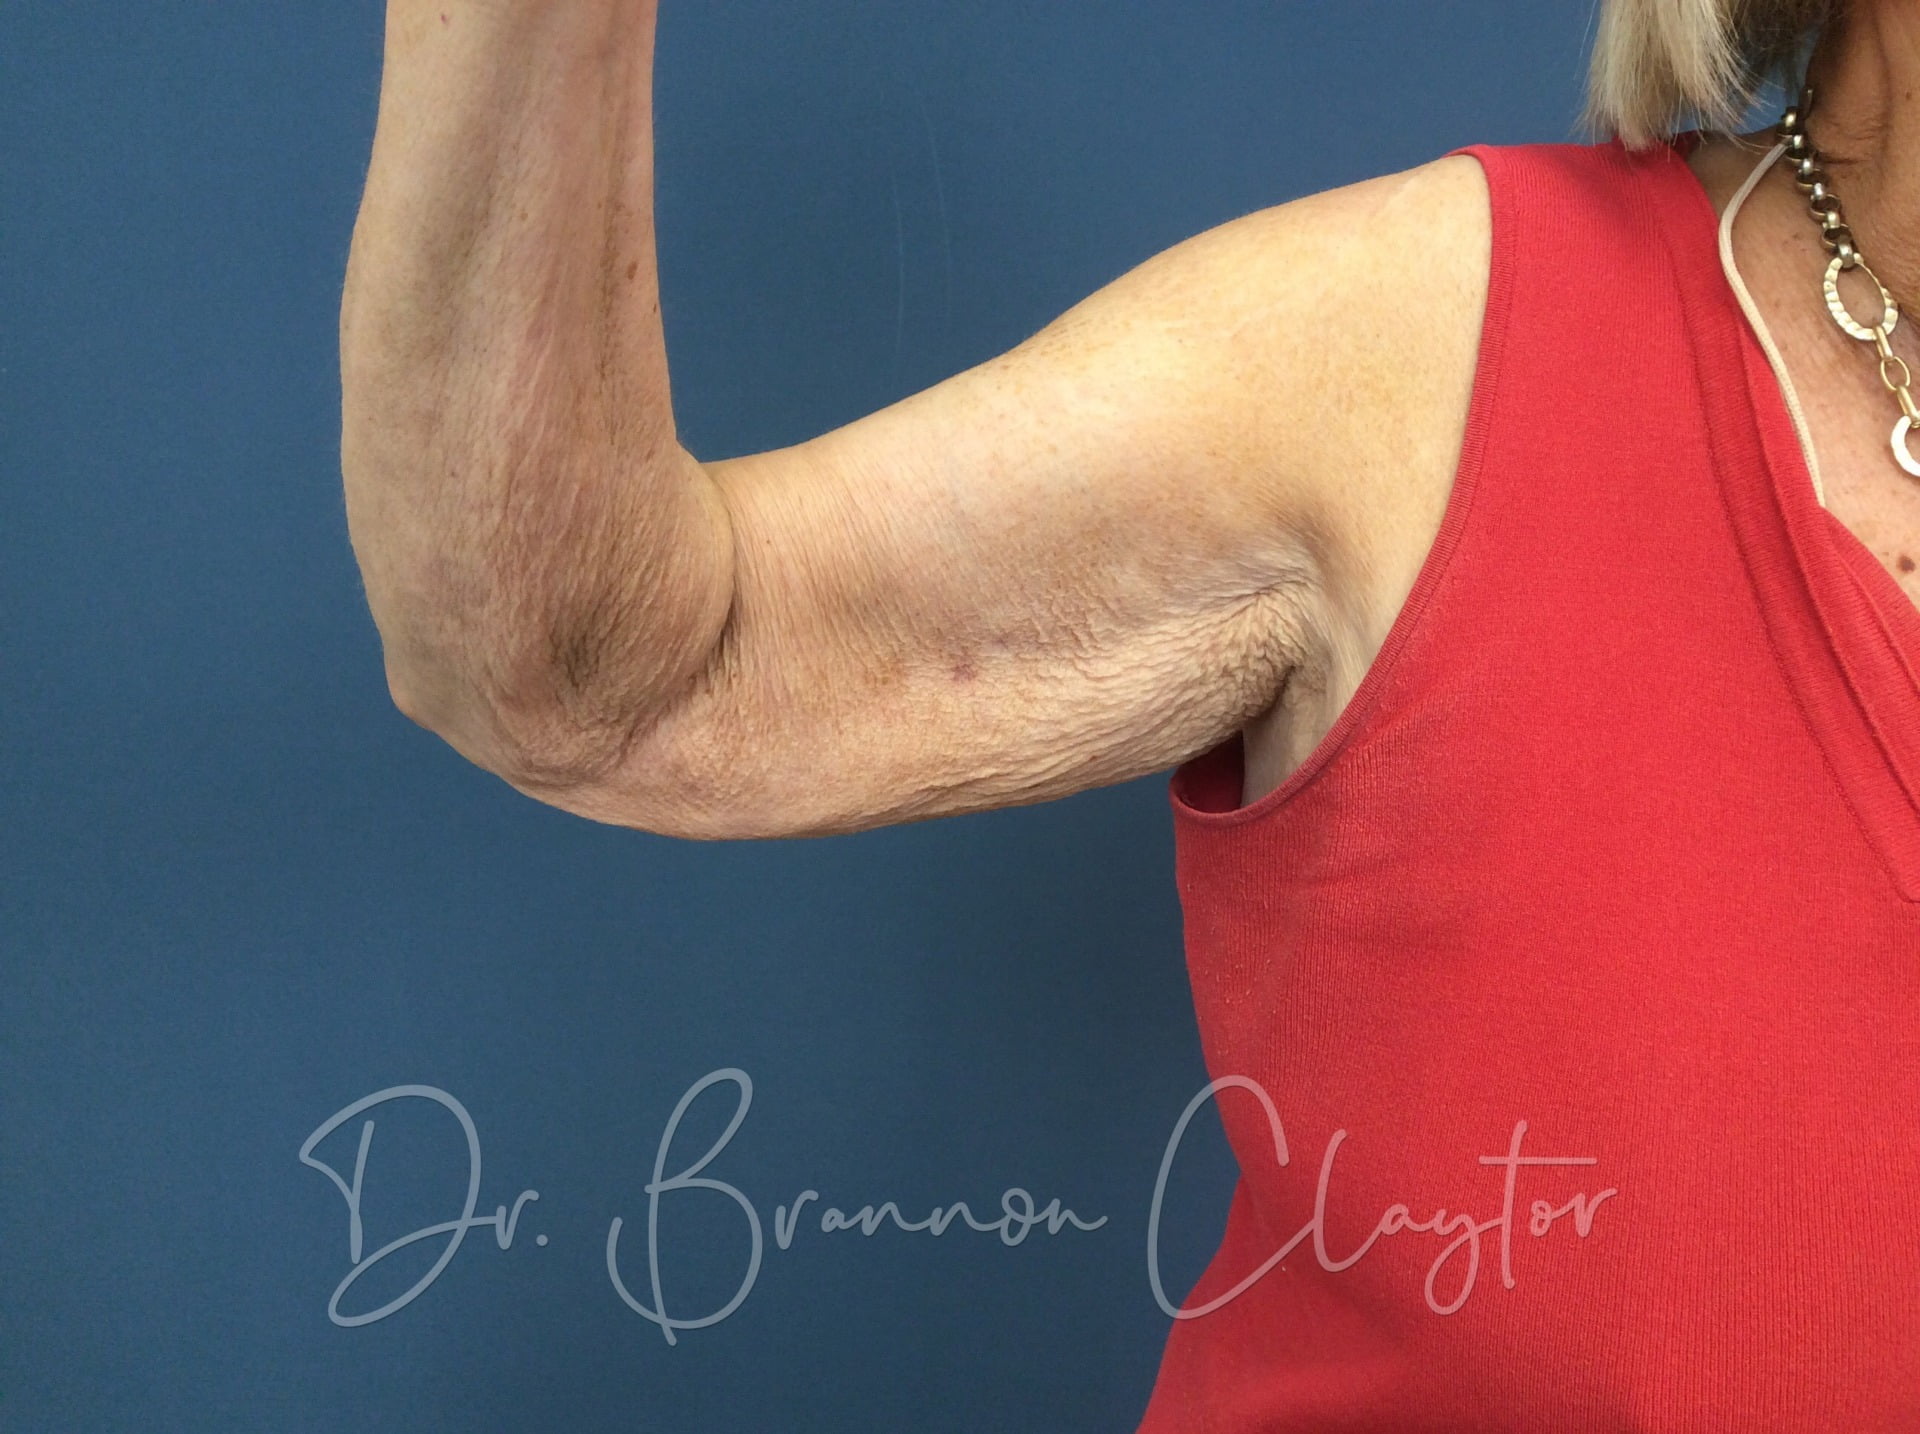 Arm Lift (Brachioplasty)